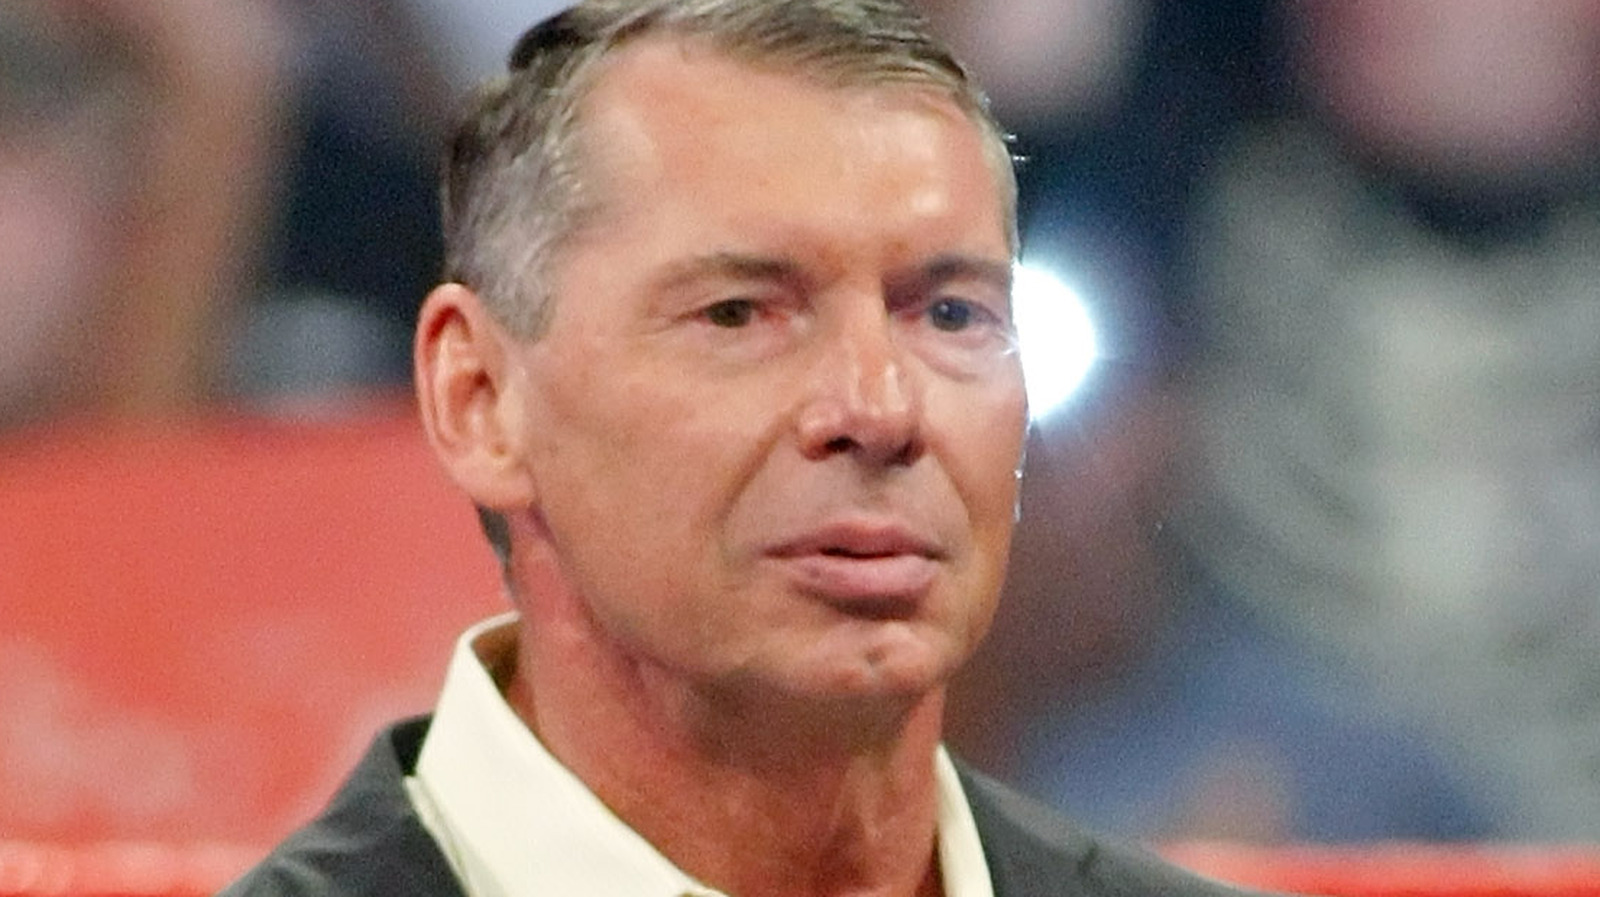 Eric Bischoff dice que la brillantez de Vince McMahon es como promotor, no como mente creativa